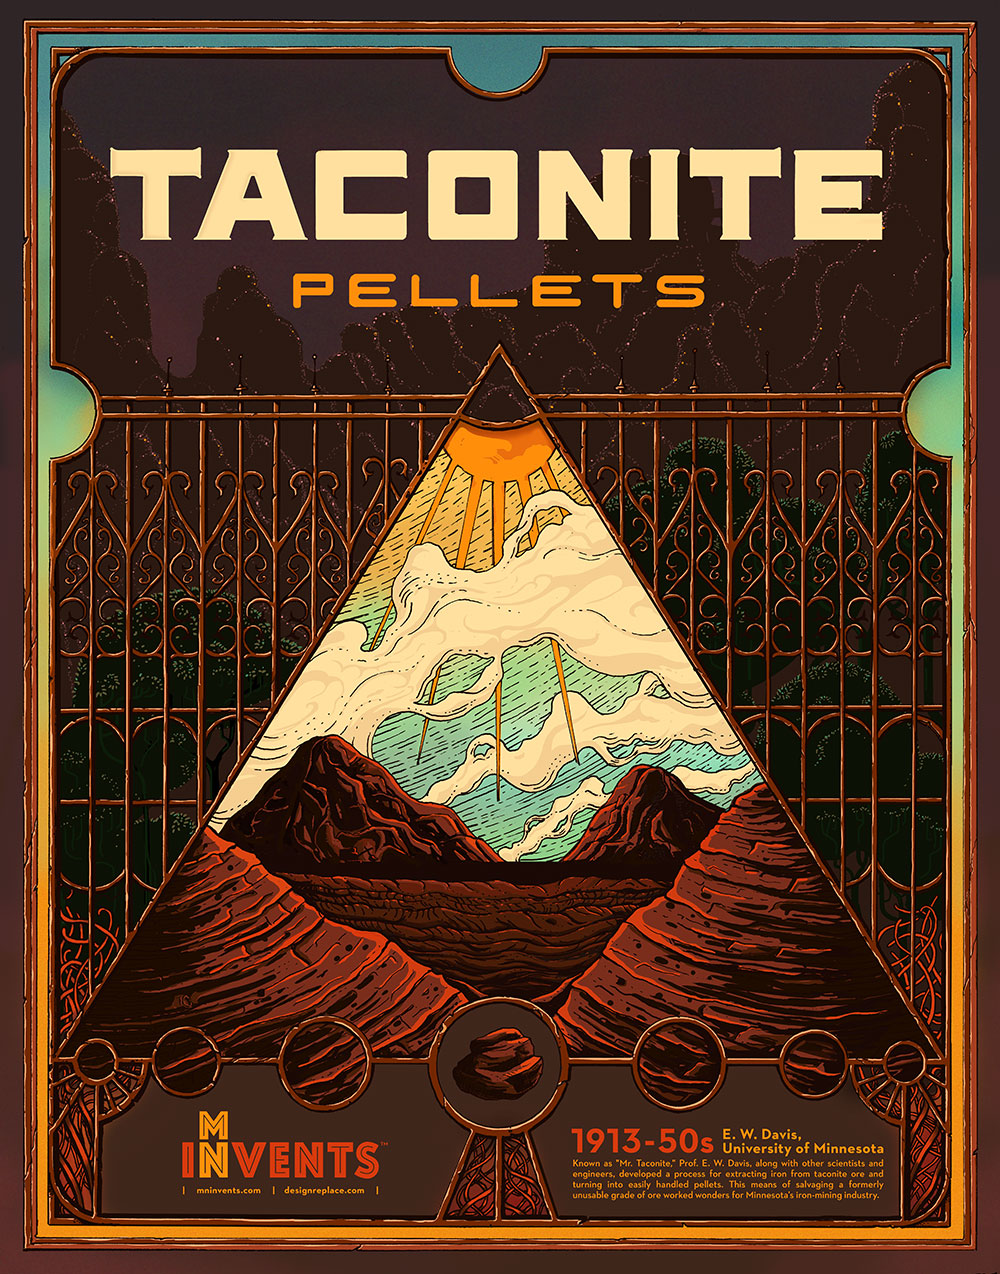 Taconite Pellets